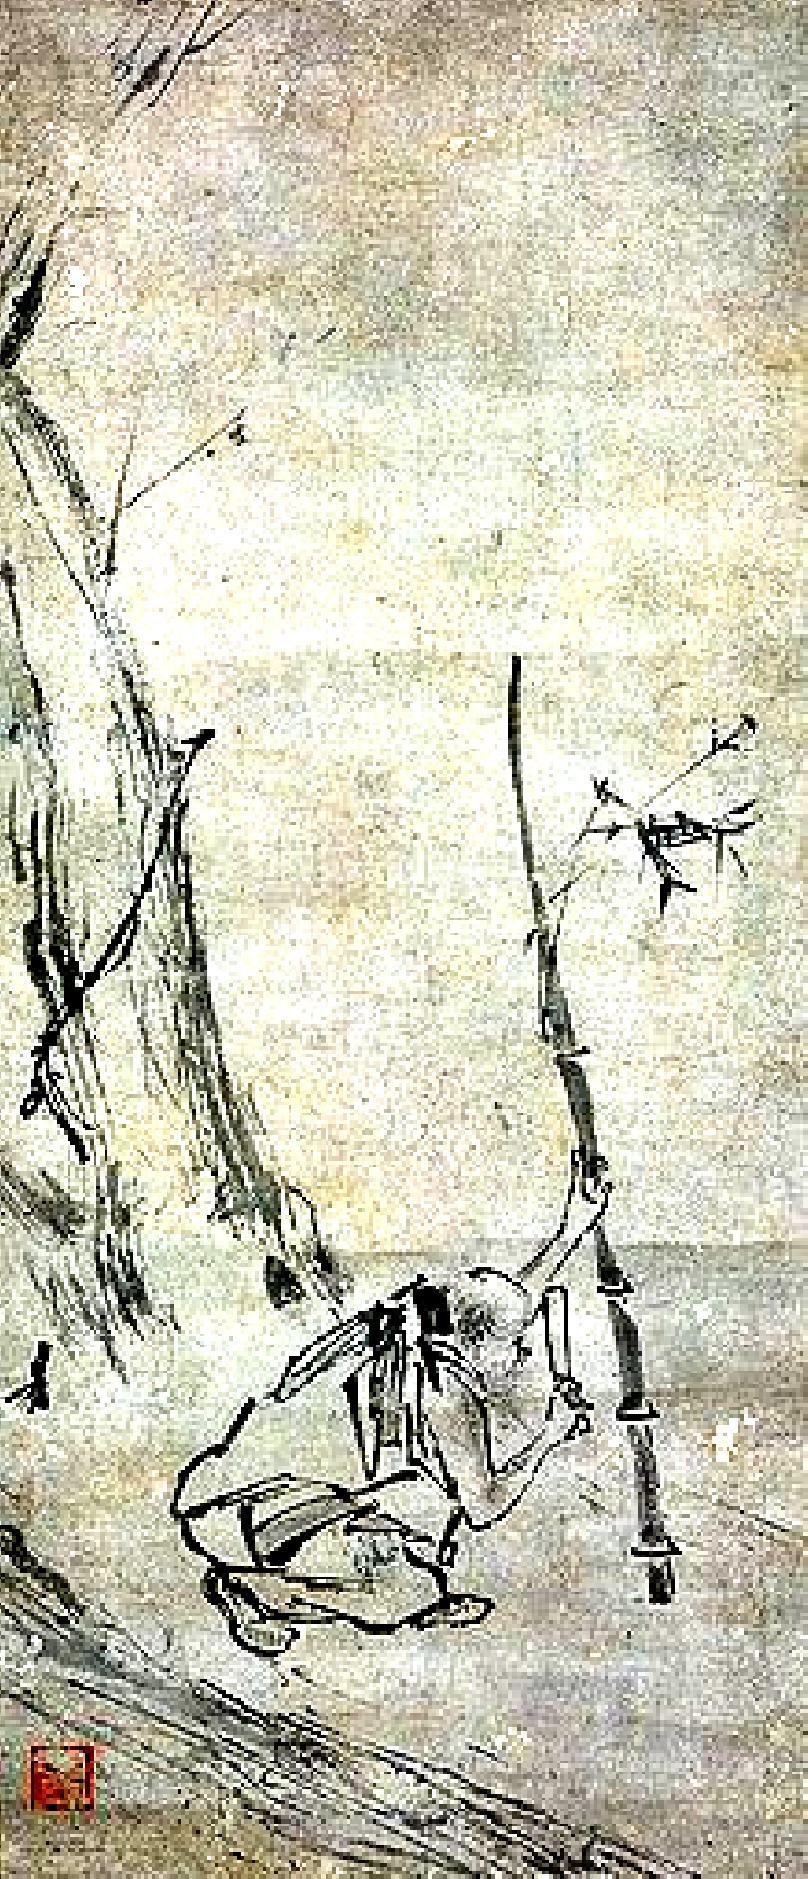 Chuej- neng (638 713) Považován za druhého zakladatele čchanu v Číně Chuej-neng je v Tribunové sútře líčen jako zastánce ideje náhlého probuzení Legendární (velkou literární a mýtopoetickou sílu) a